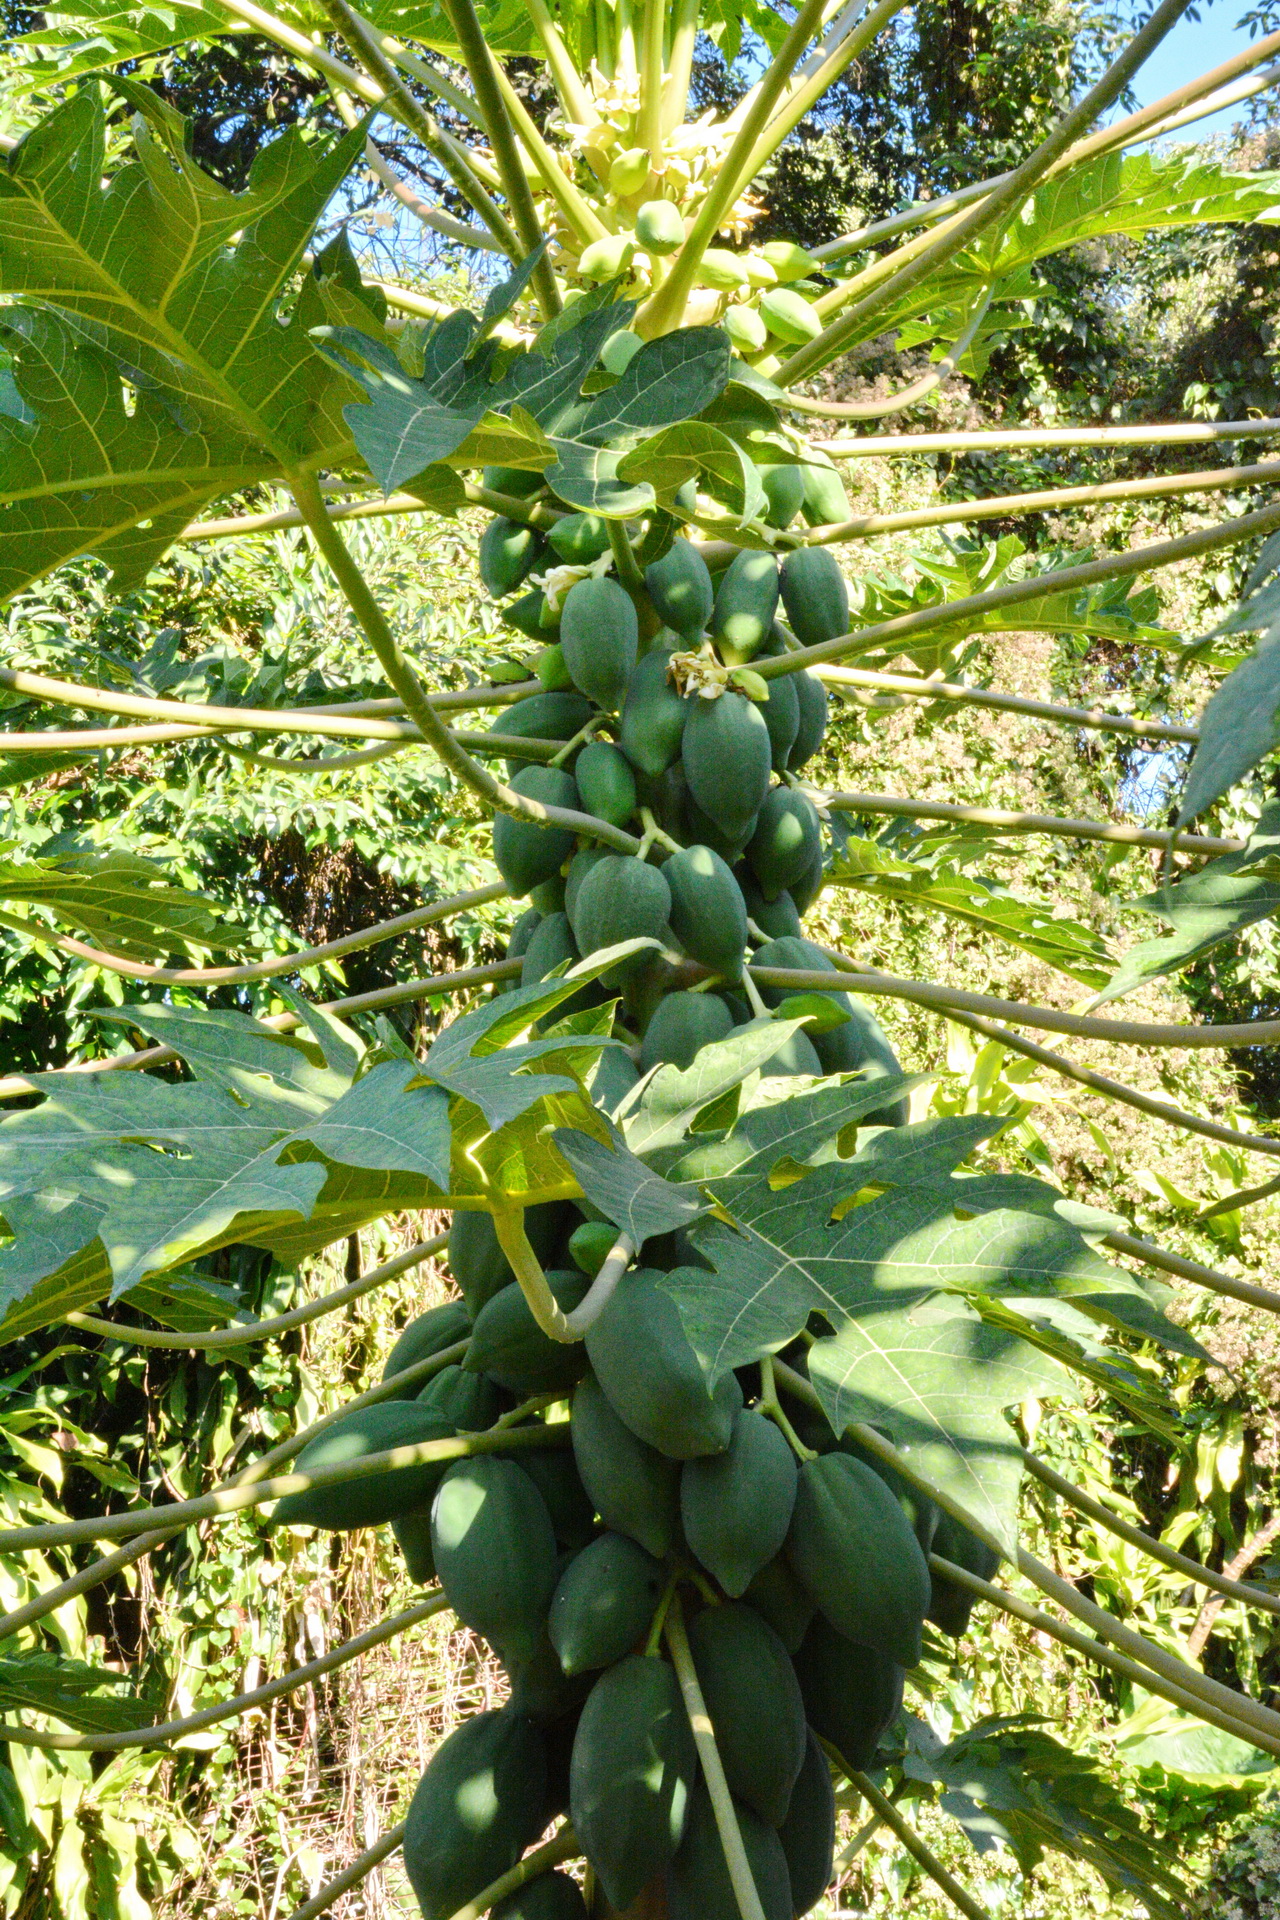 广州市果树所育成番木瓜新品种数量居全国首位